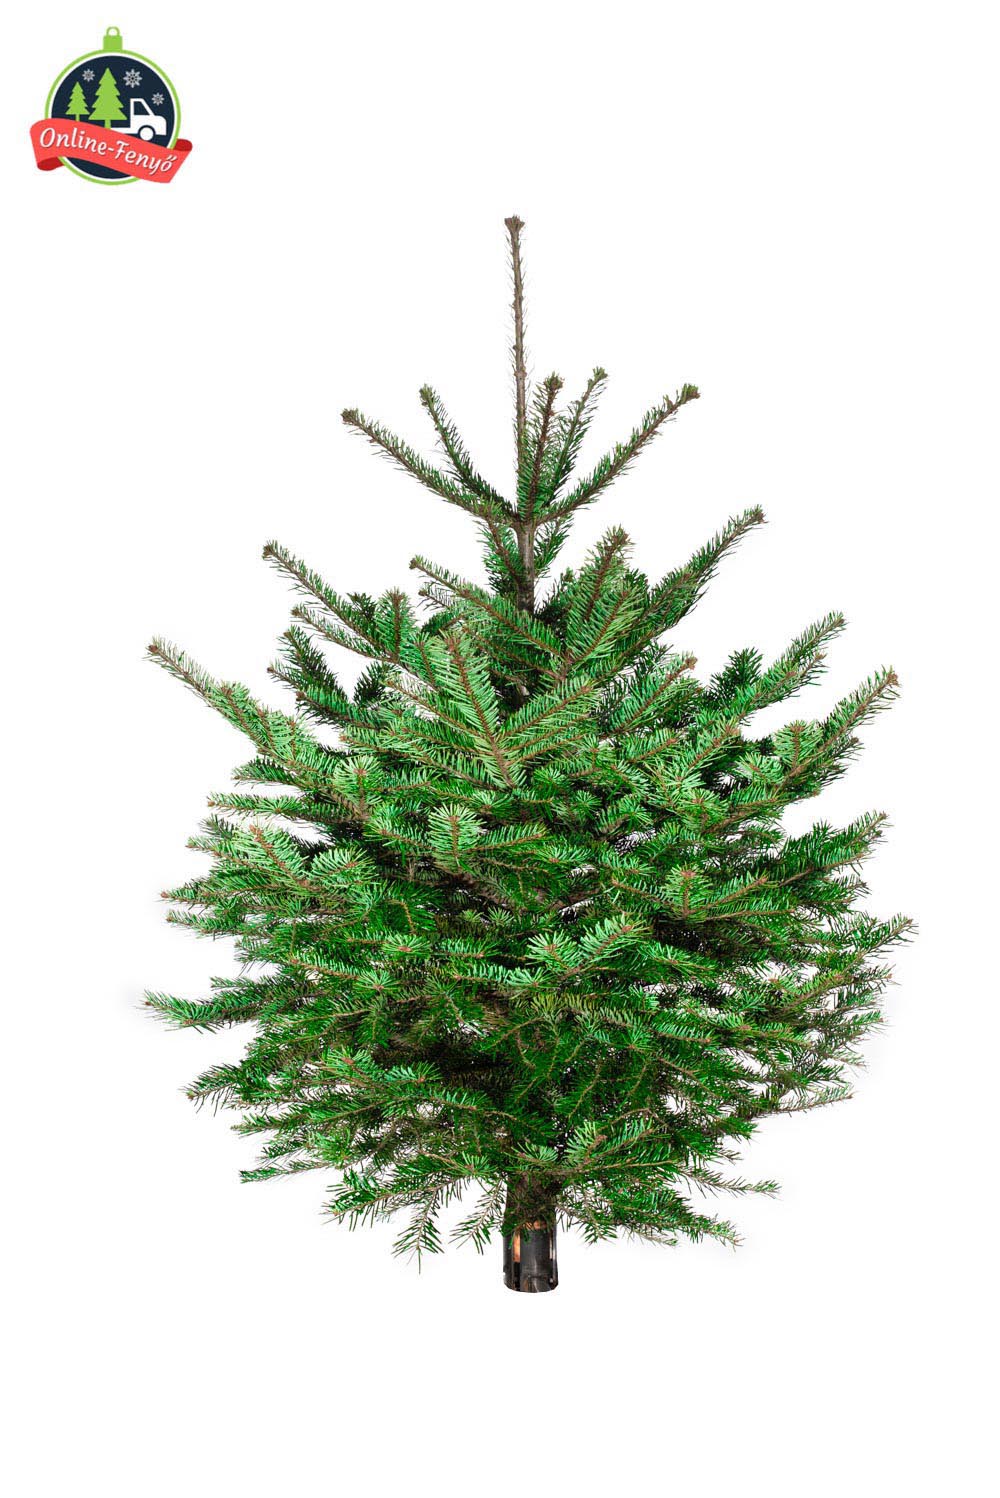 Cégek, üzletek számára recepcióra 100, 150 cm-es nordmann karácsonyfa